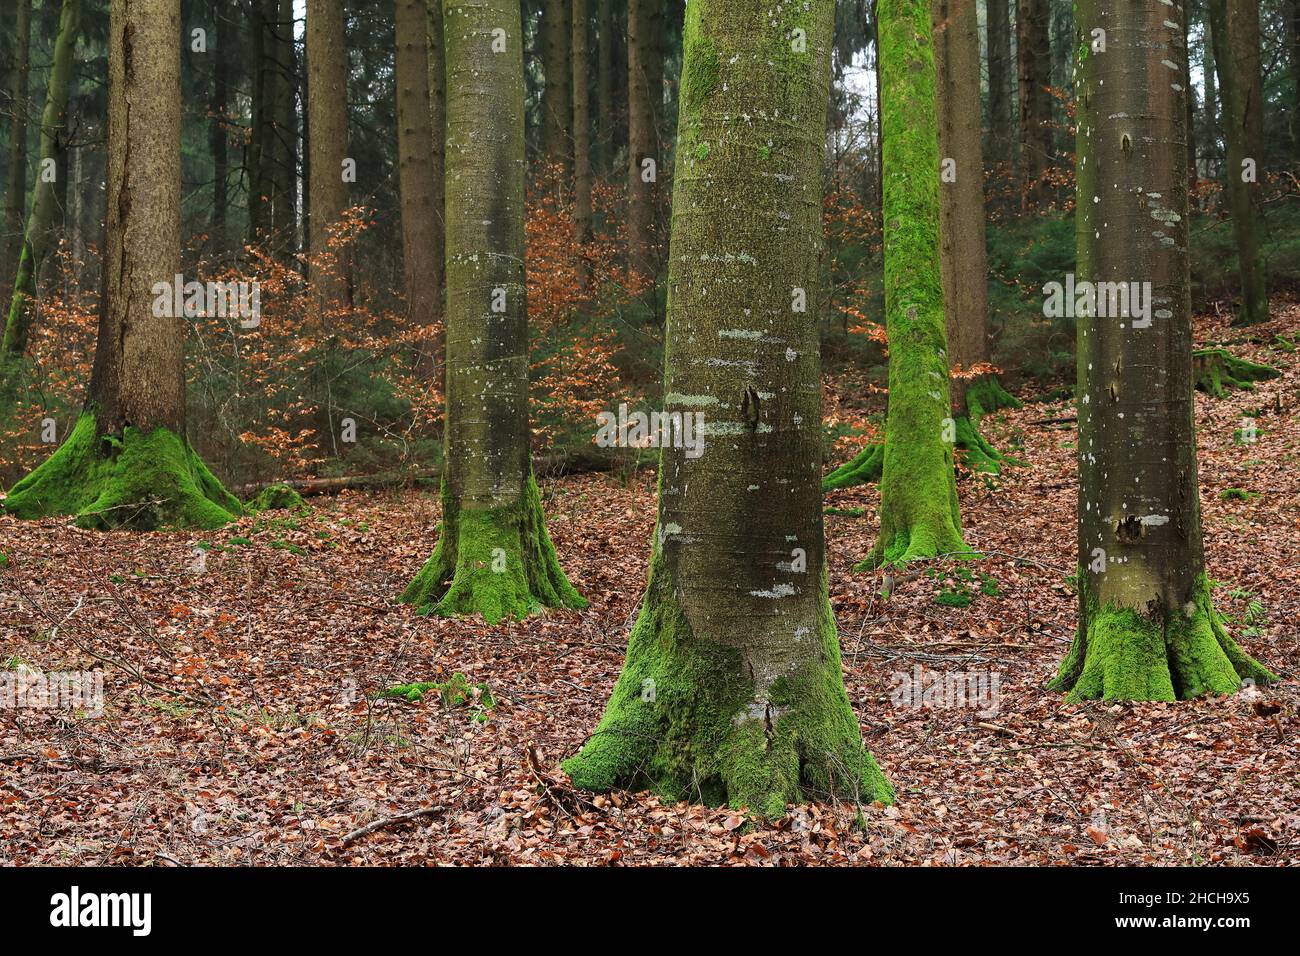 Forêt de hêtre (Fagus), famille des Hêtre (Fagaceae), Goeggingen, Krauchenwies, Parc naturel du Haut Danube, Bade-Wurtemberg, Allemagne Banque D'Images